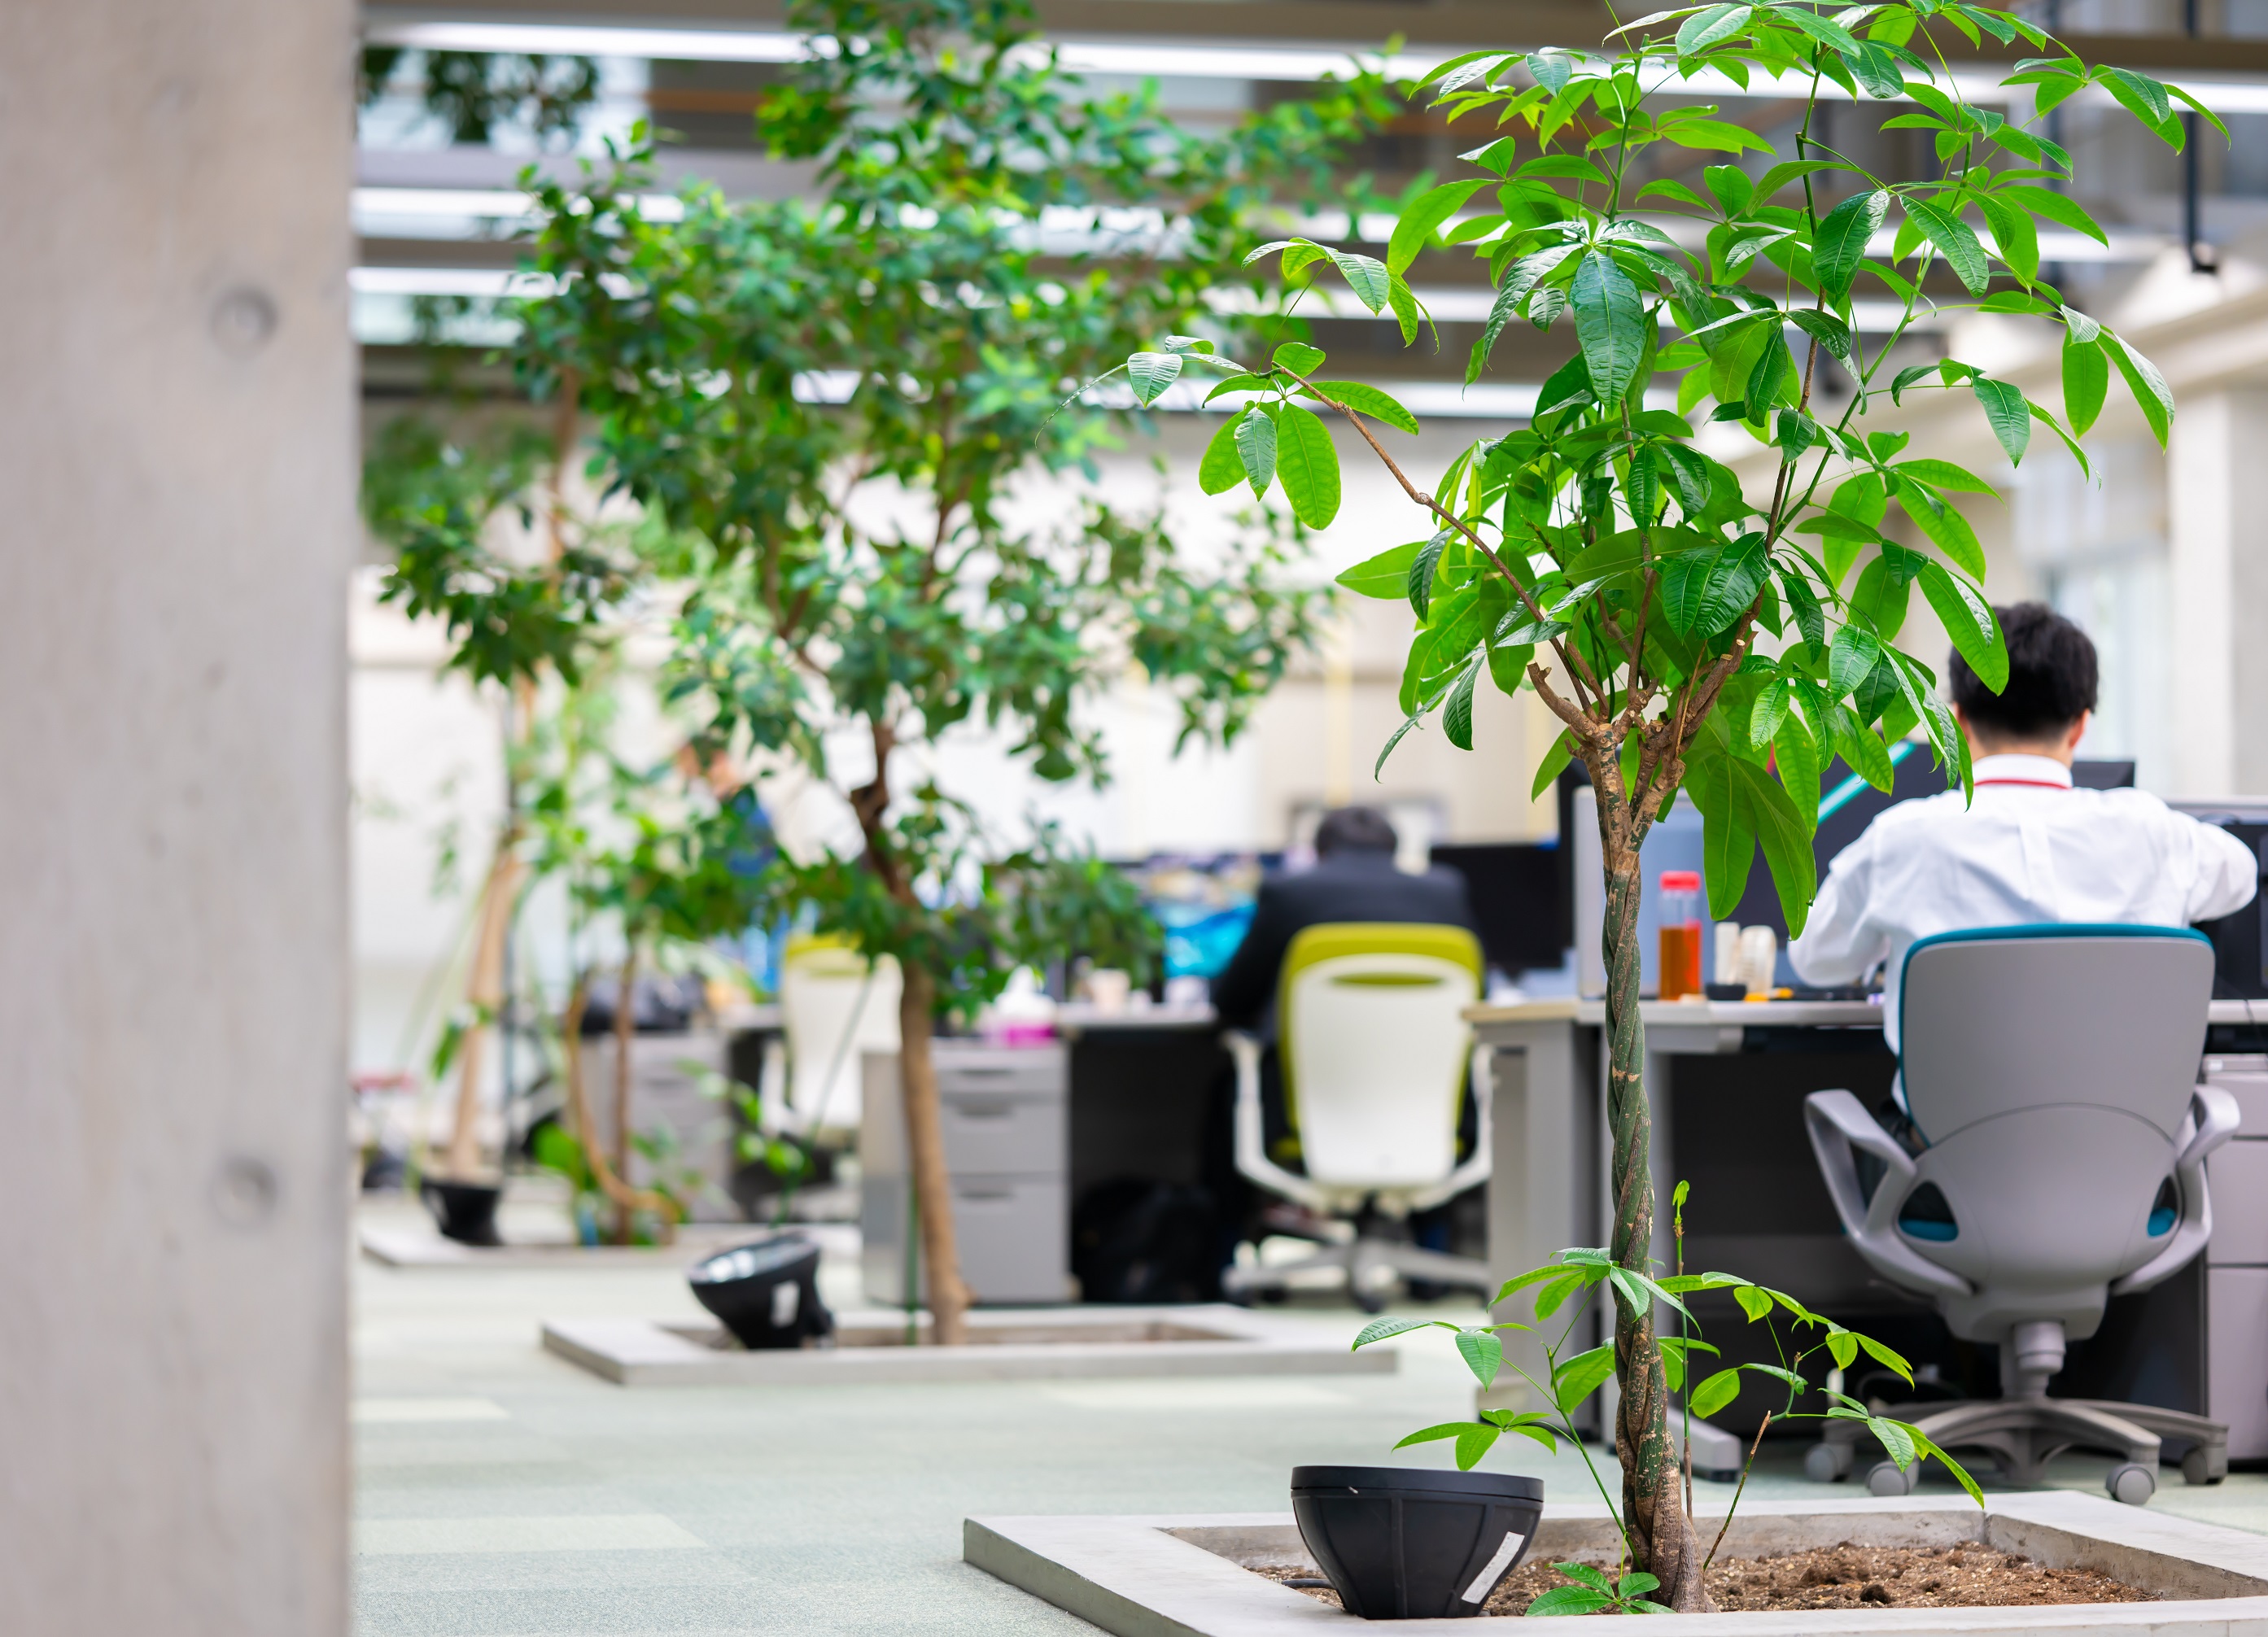 【函館事業所】太陽光を採り入れ、樹木を配置した快適なオフィスです